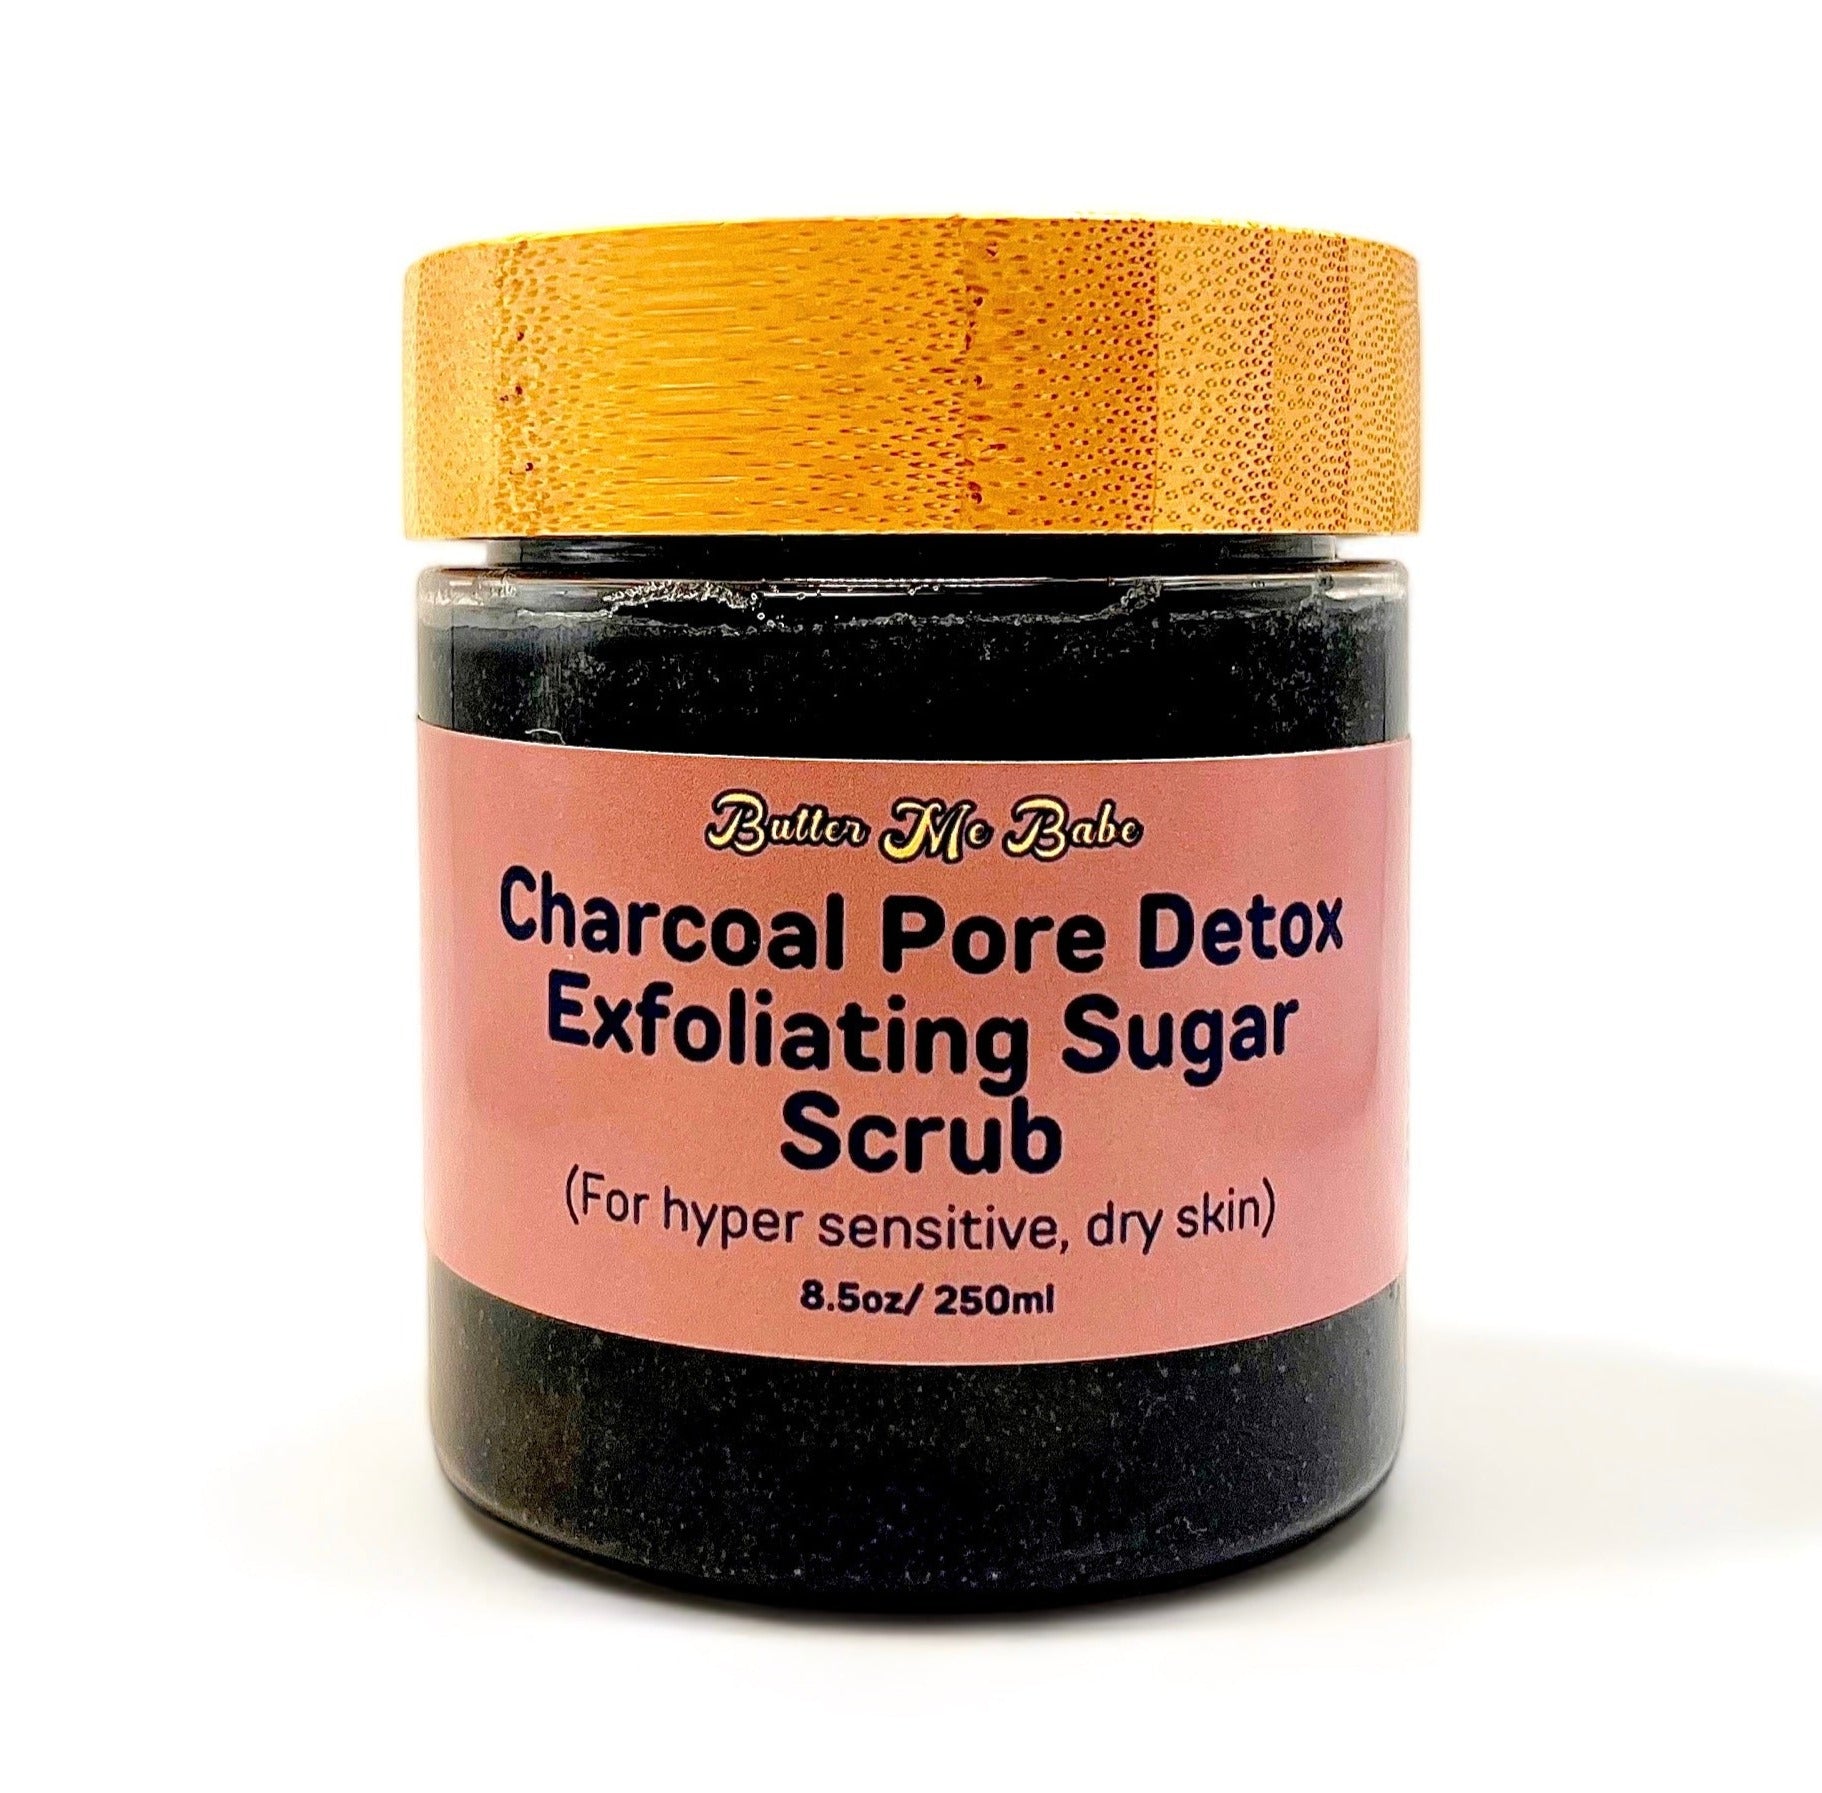 Charcoal Pore Detox Sugar Scrub